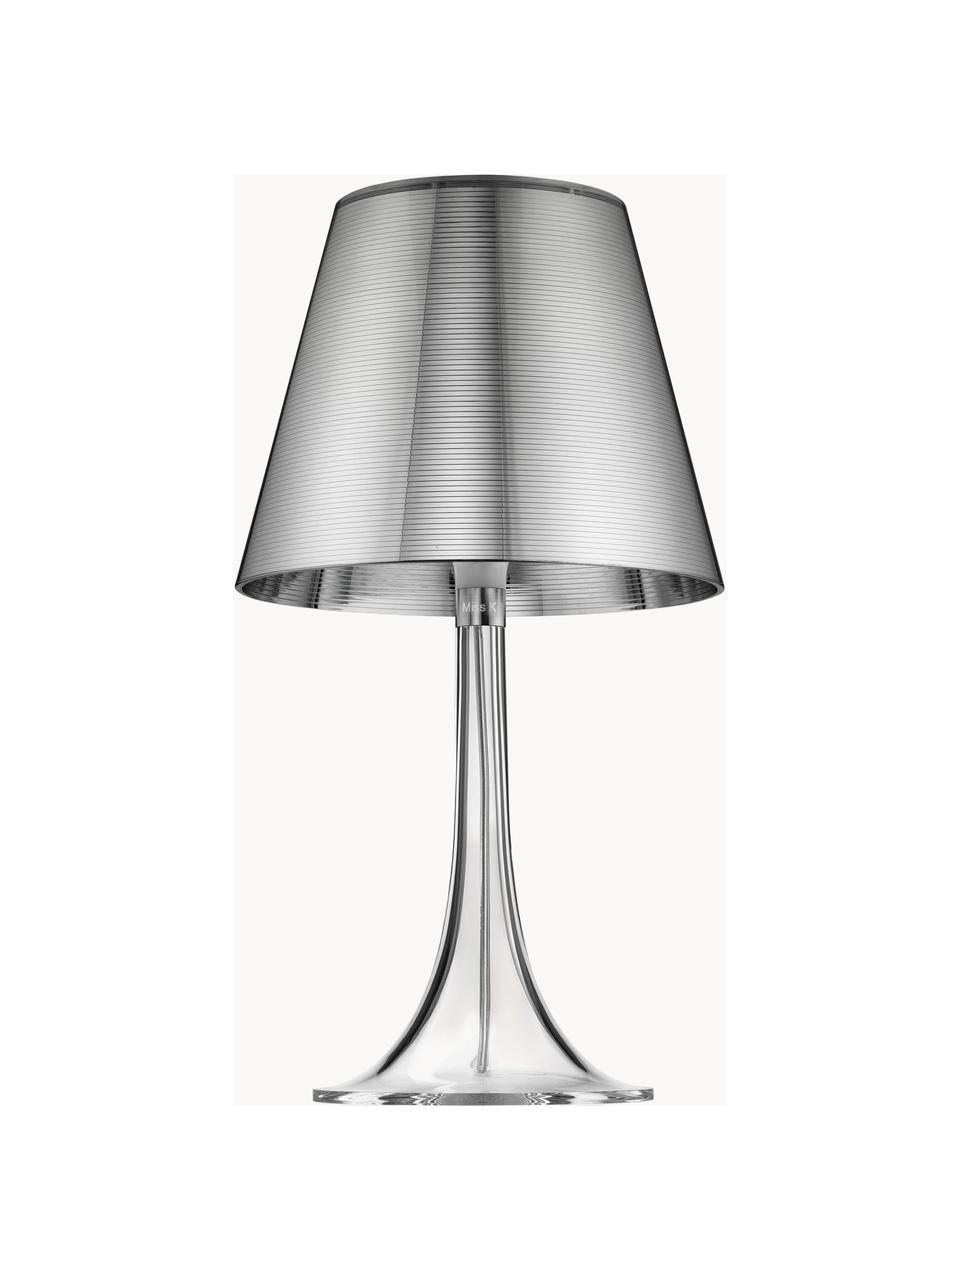 Dimbare tafellamp Miss K met touch functie, Kunststof, Zilverkleurig, transparant, B 24 x H 43 cm